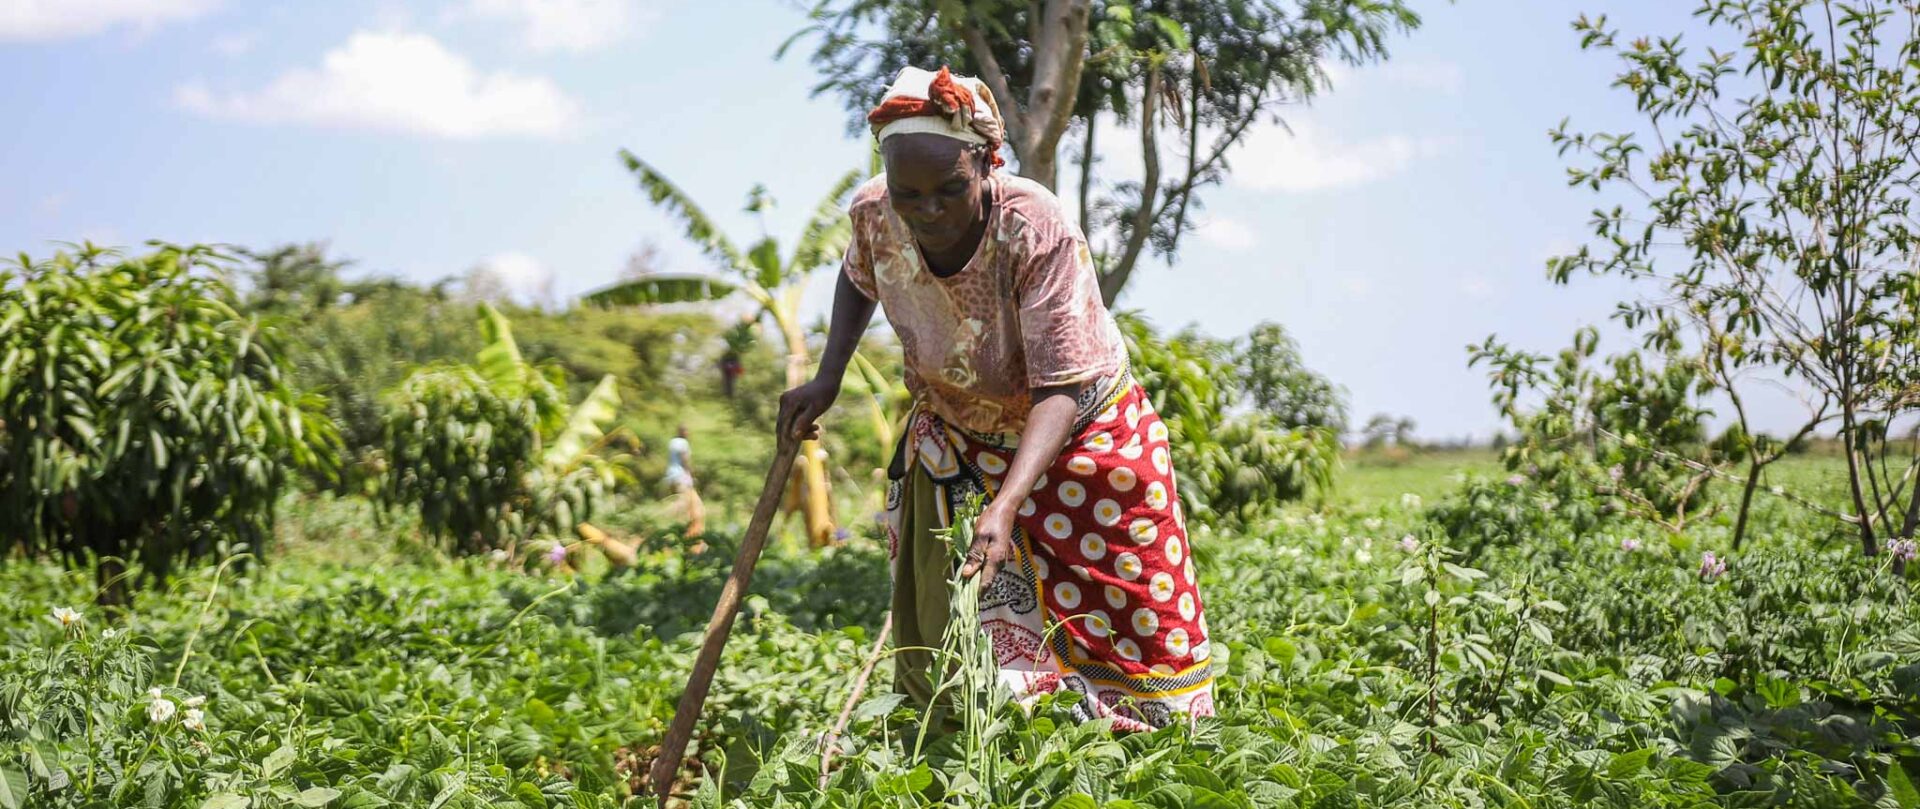 Au Kenya, les méthodes d'agroécologie encouragées par Action de Carême donnent des résultats prometteurs | © Action de Carême